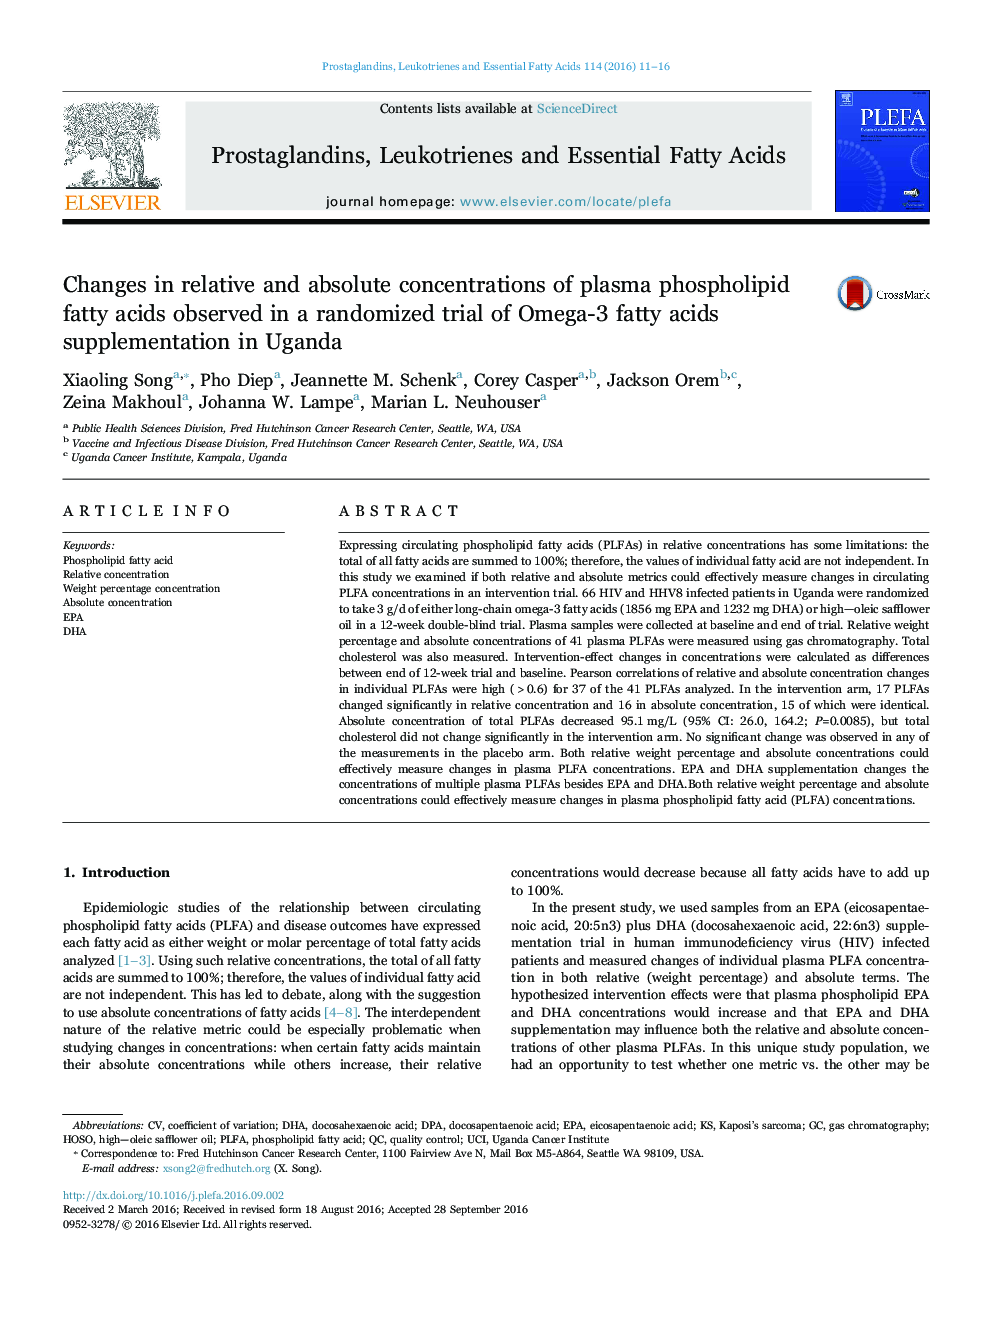 تغییرات غلظت نسبی و مطلق اسیدهای چرب فسفولیپید پلاسما در یک آزمایش تصادفی از مکمل های اسید چرب امگا 3 در اوگاندا 